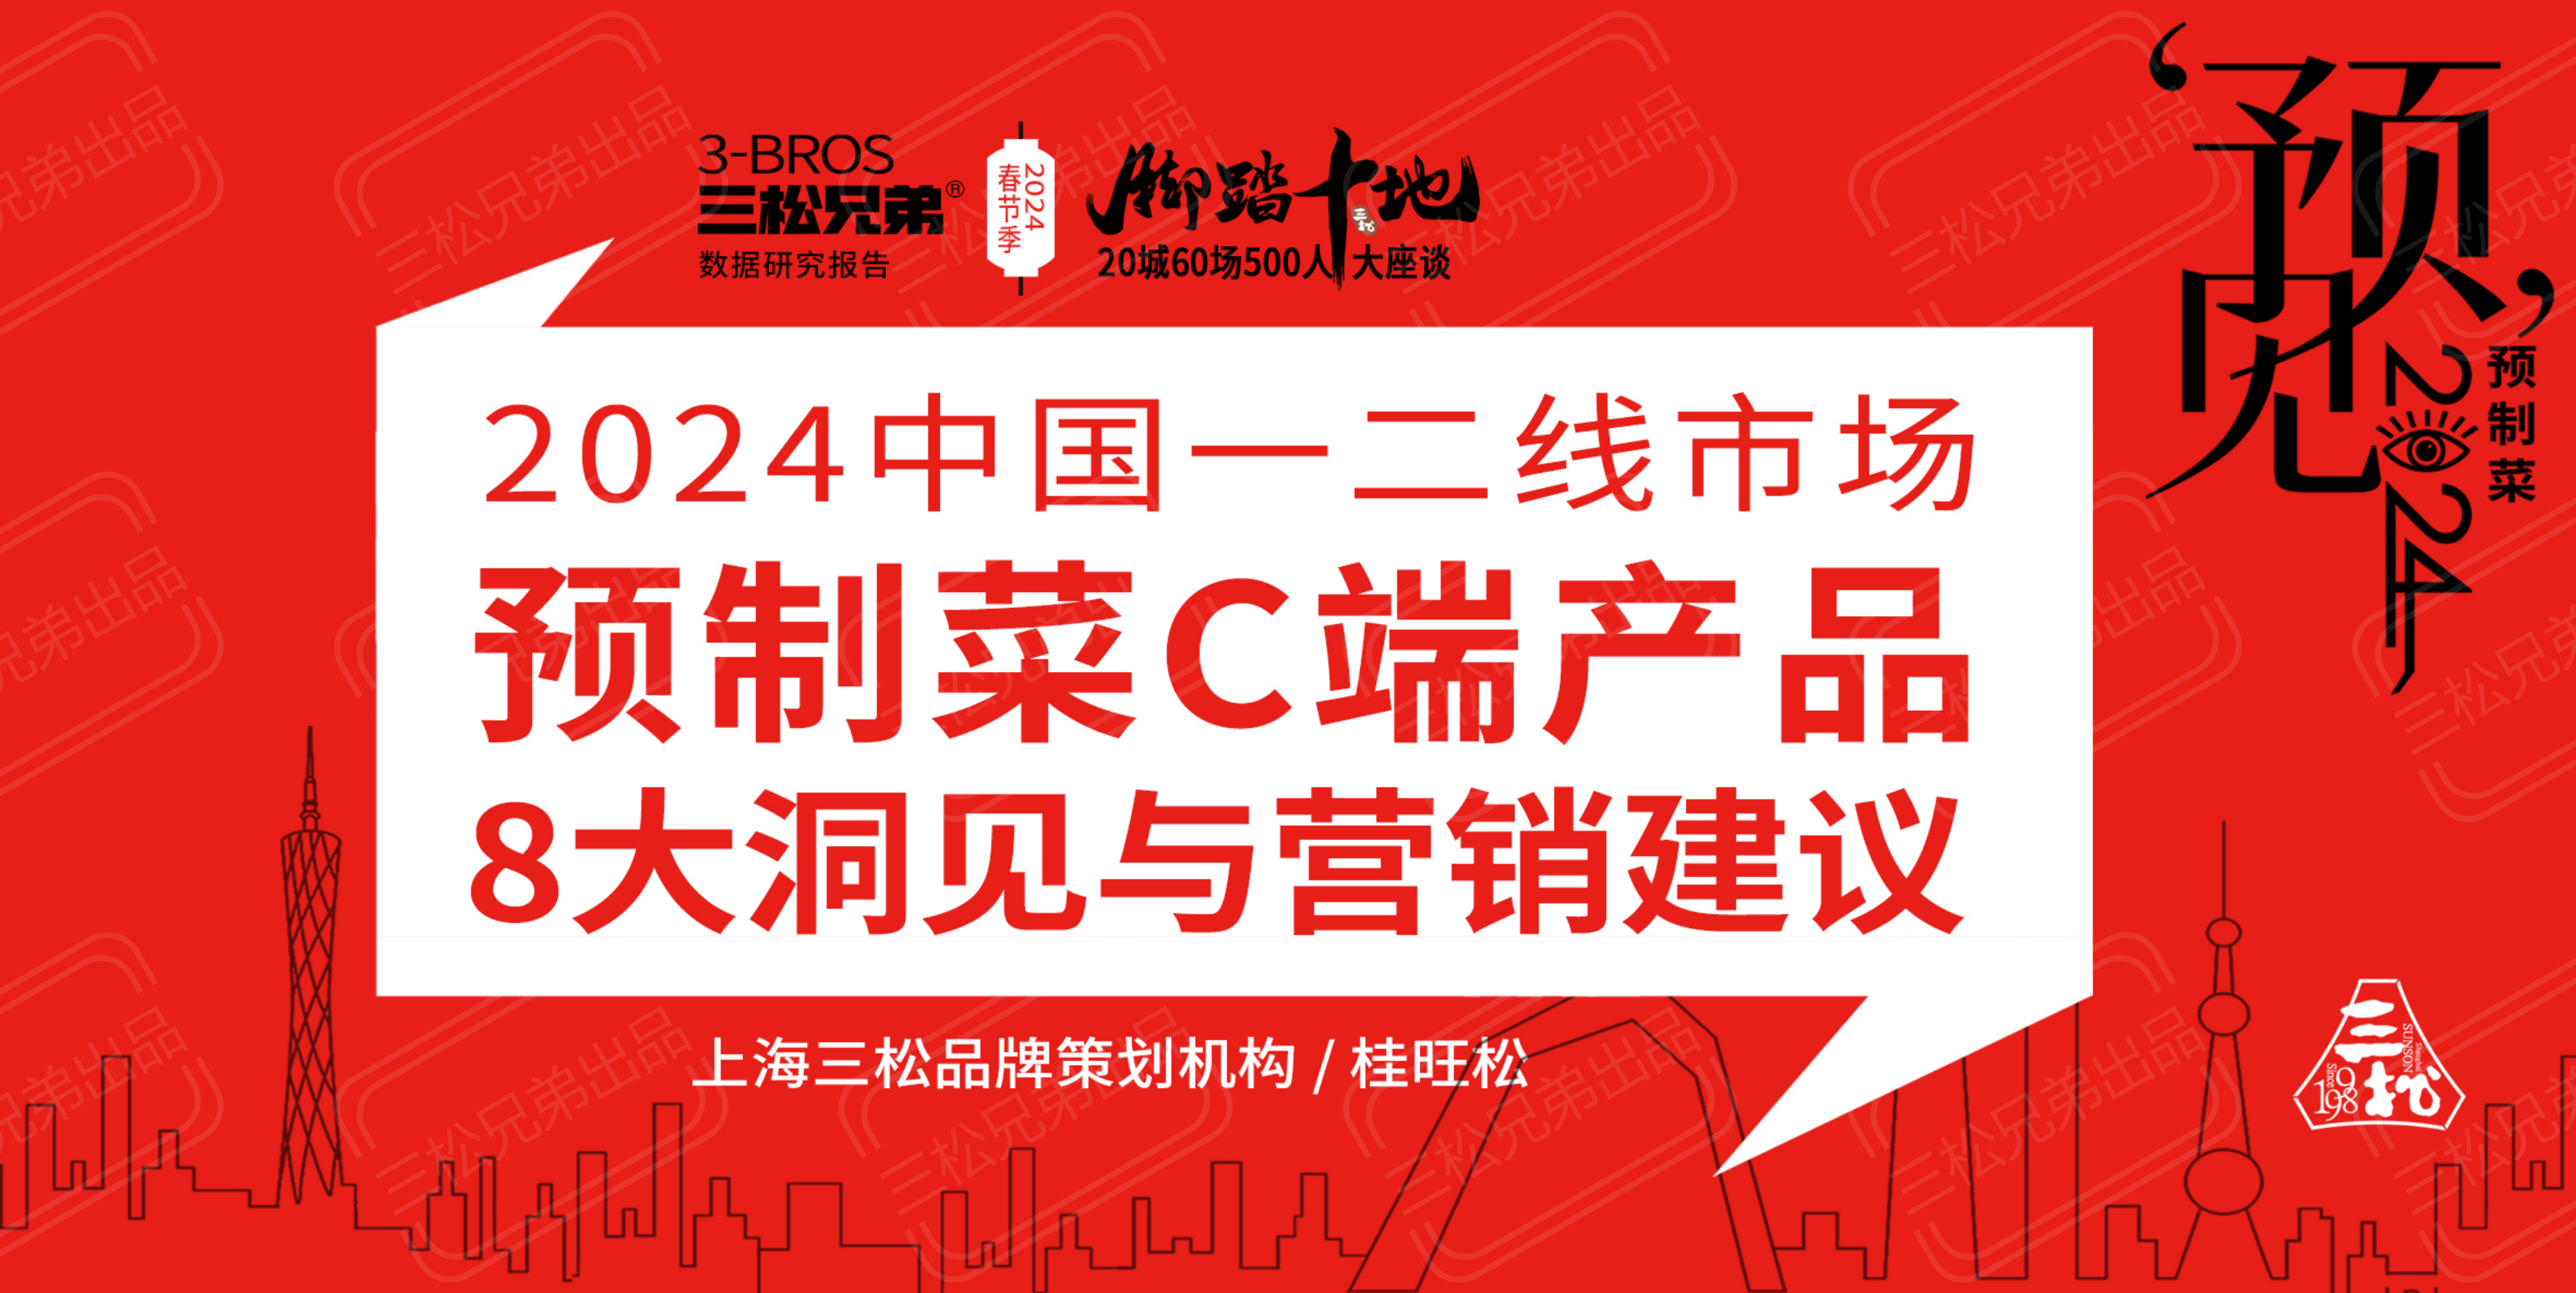 2024中国一二线市场预制菜C端8大洞见与营销建议改(1)_04.png